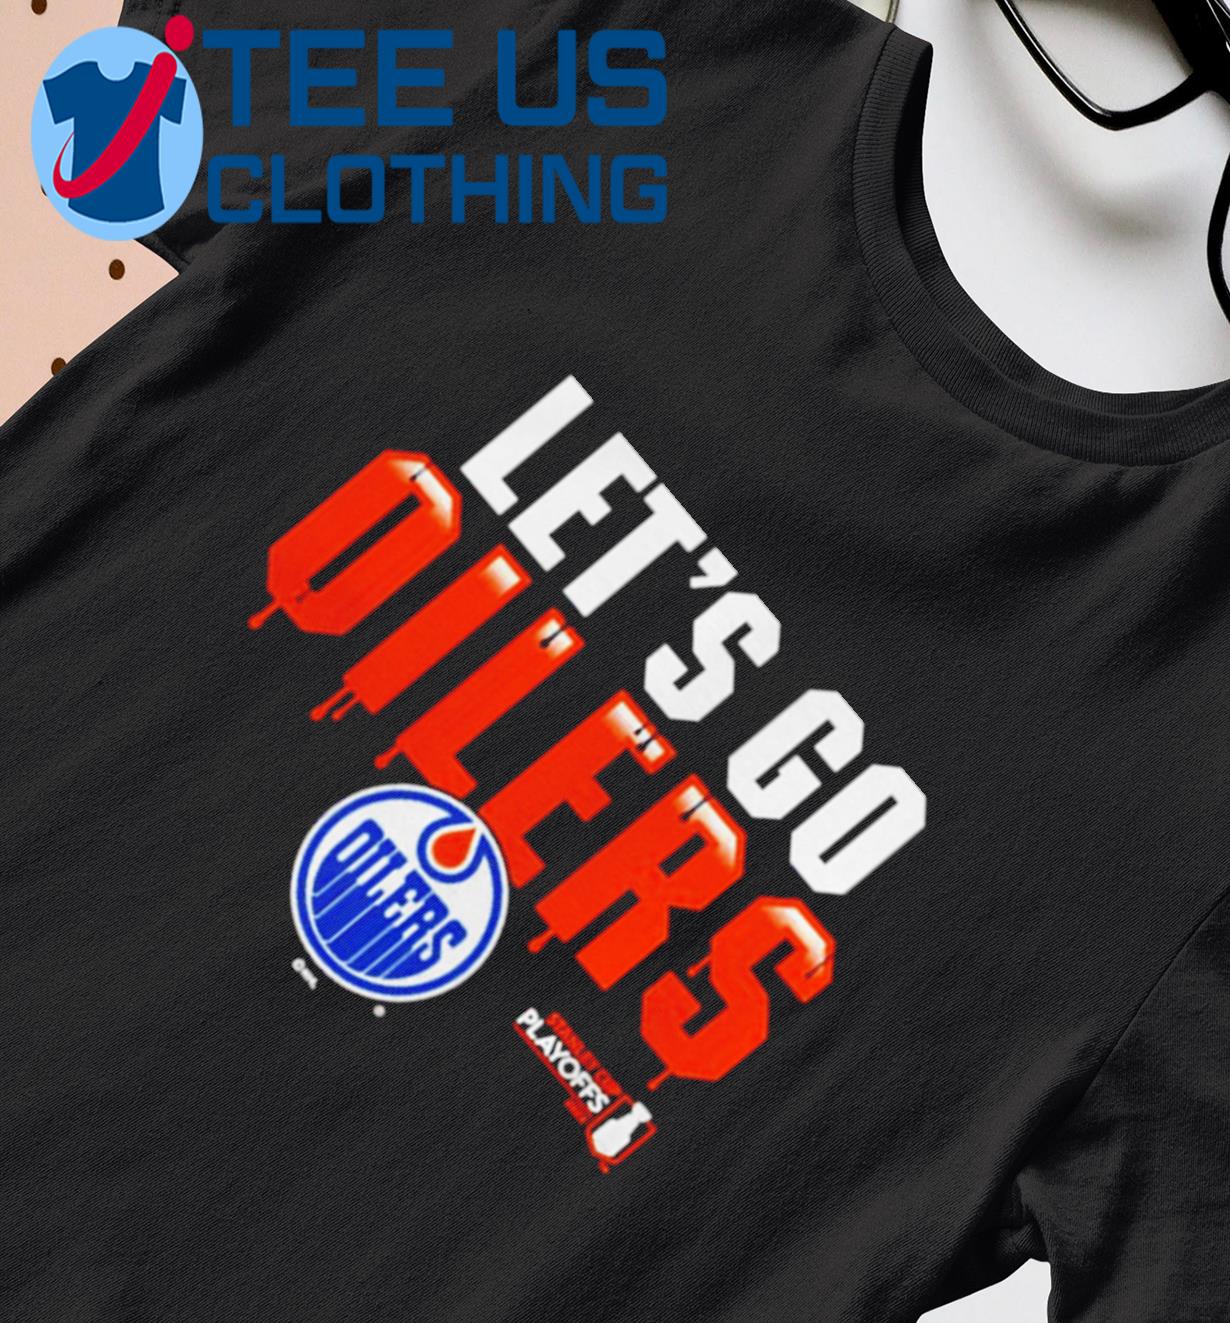 Edmonton Oilers let's go Oilers shirt, hoodie, sweater, long sleeve and  tank top